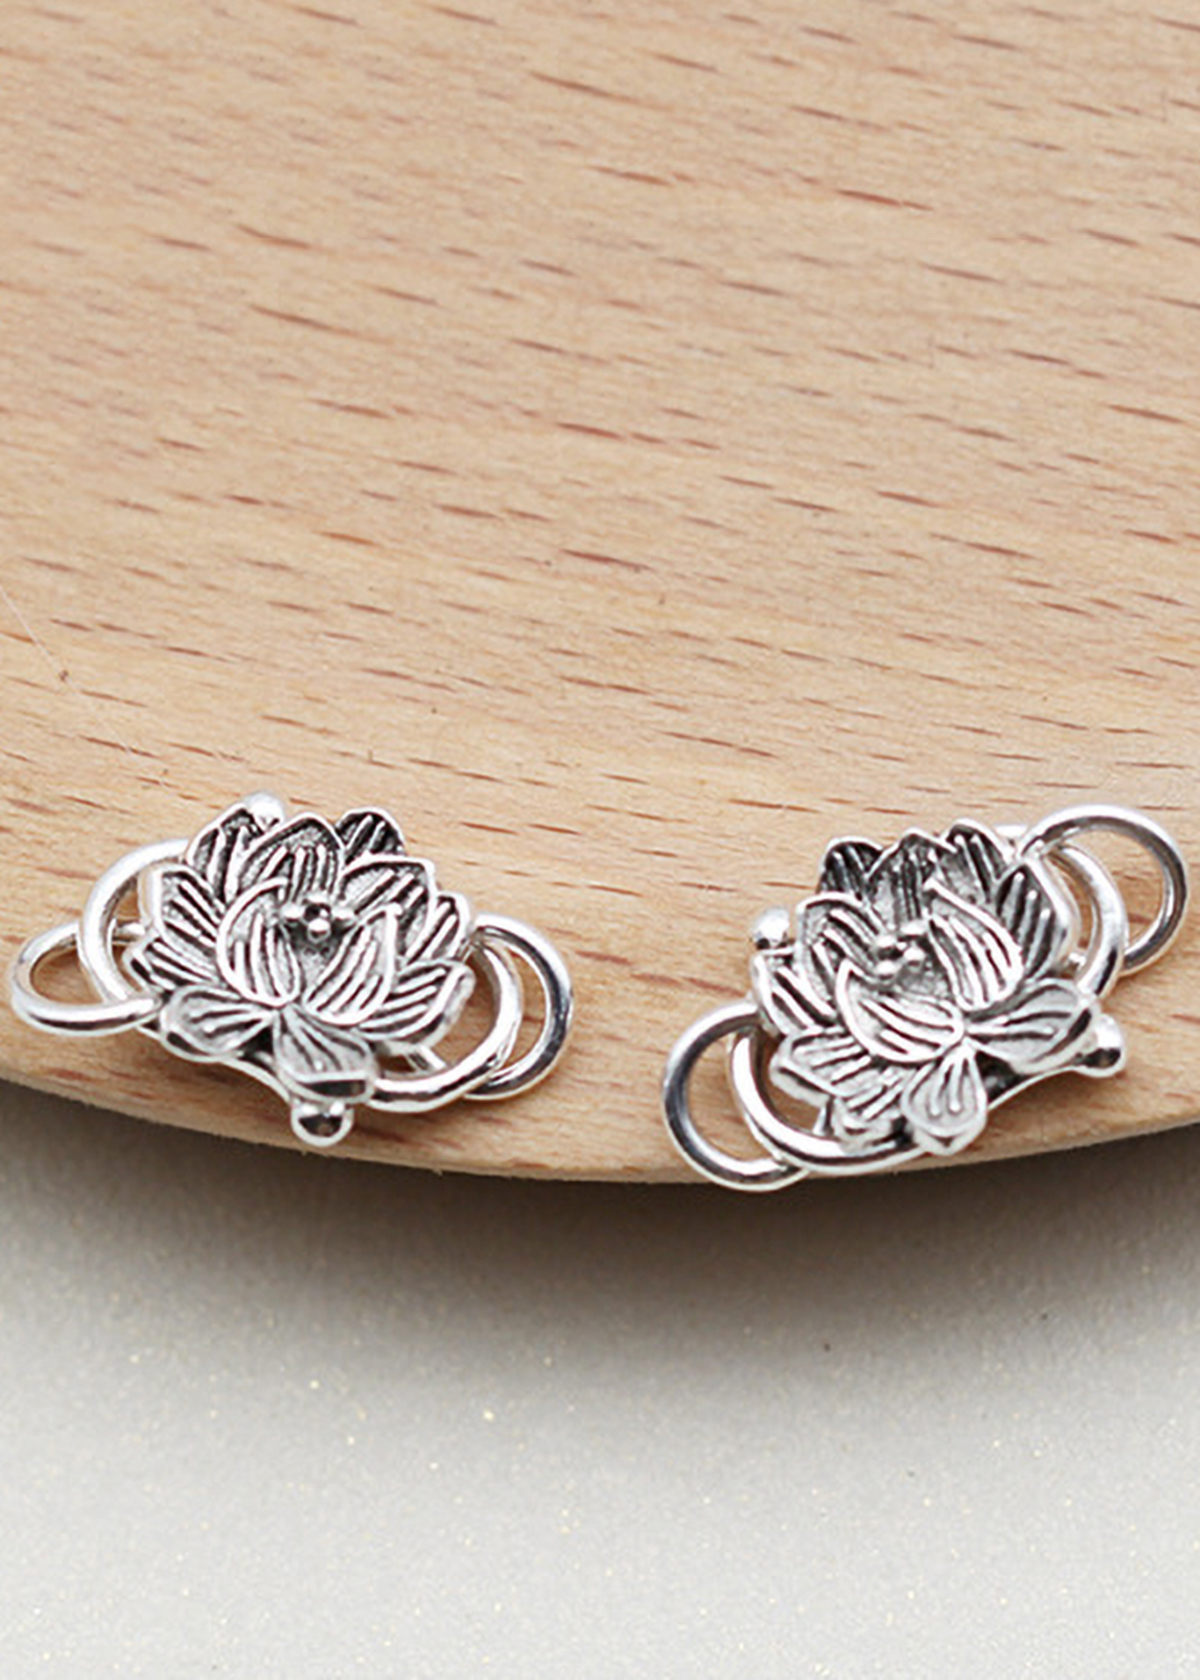 Combo 2 cái charm bạc móc khóa hình hoa sen kết vòng tay, dây chuỗi - Ngọc Quý Gemstones